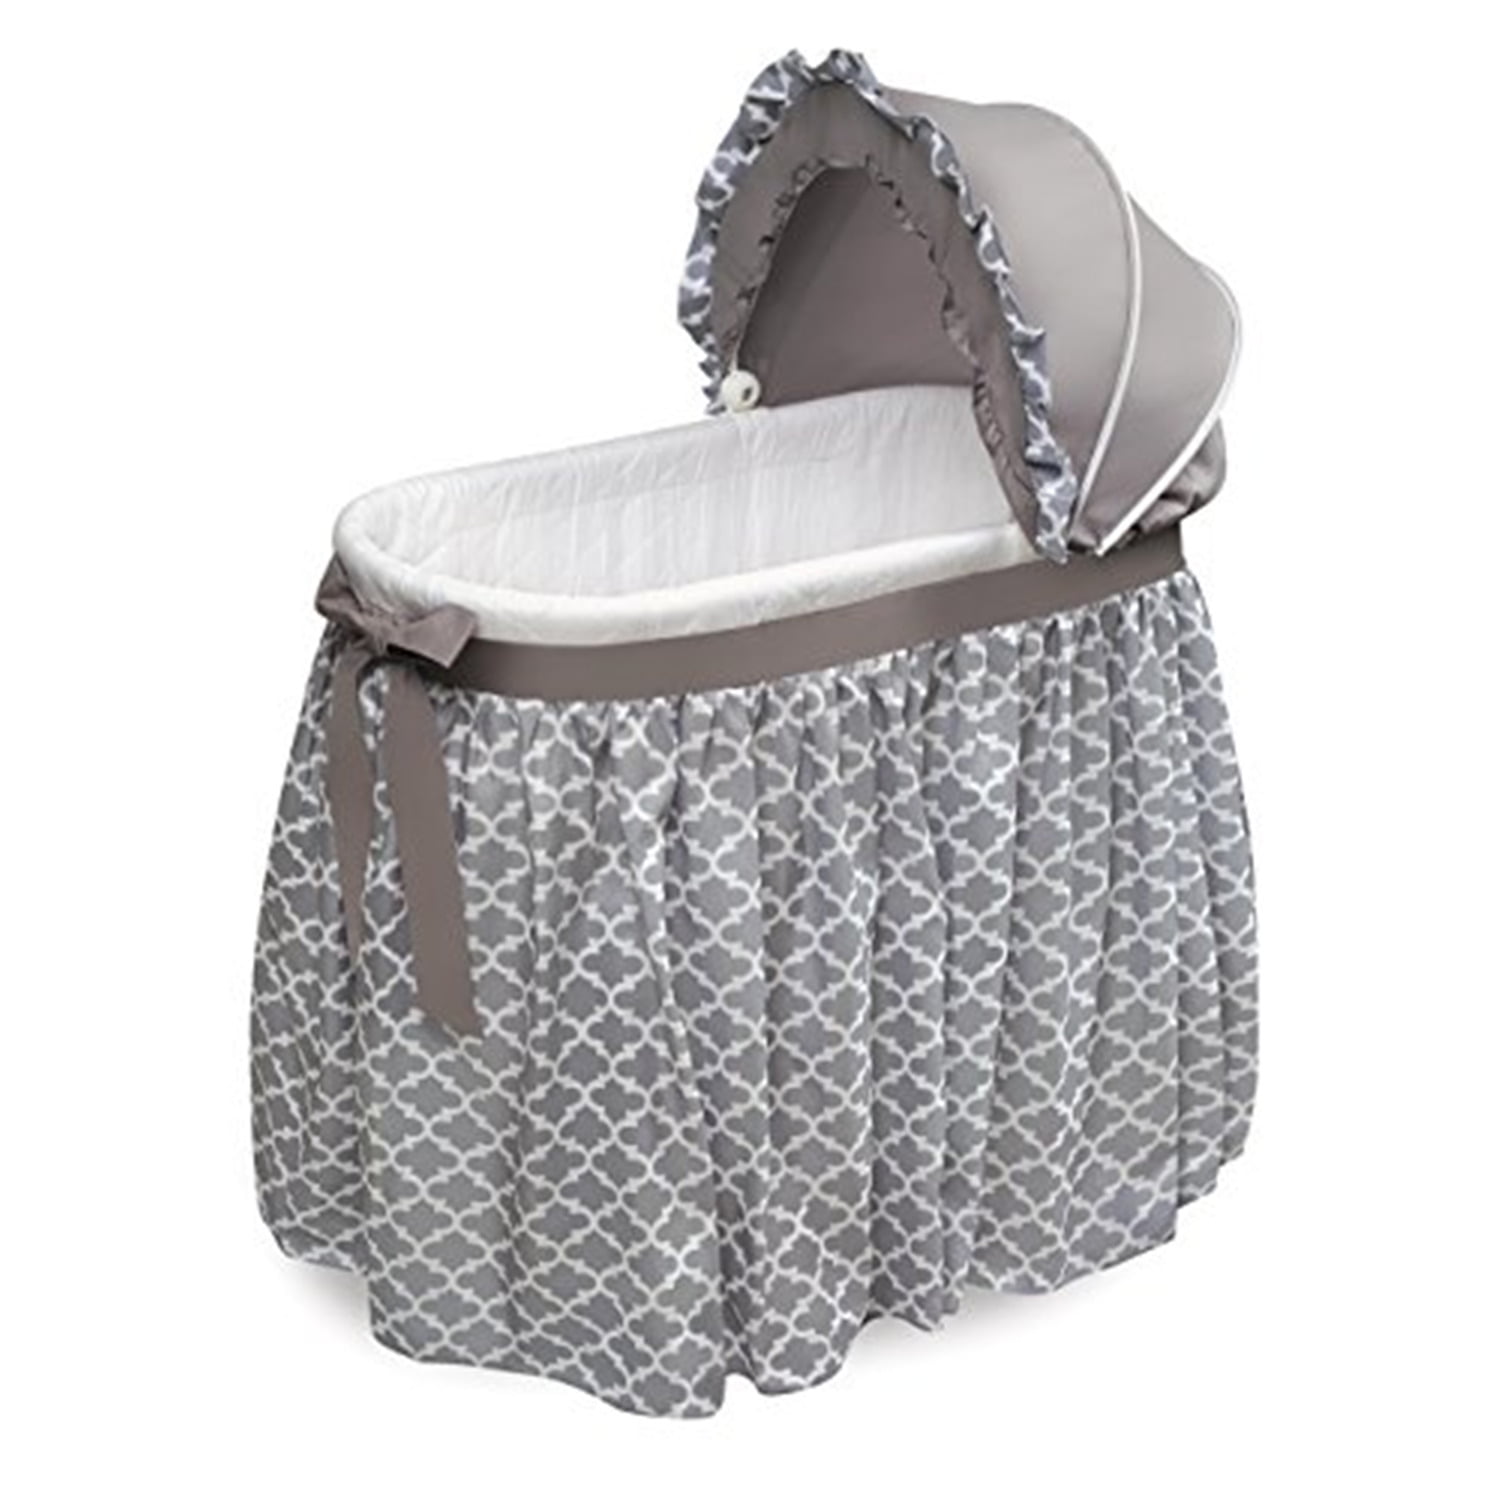 Badger Basket Wishes Oval Baby Bassinet - Full Length Skirt - Gray/Lantern  